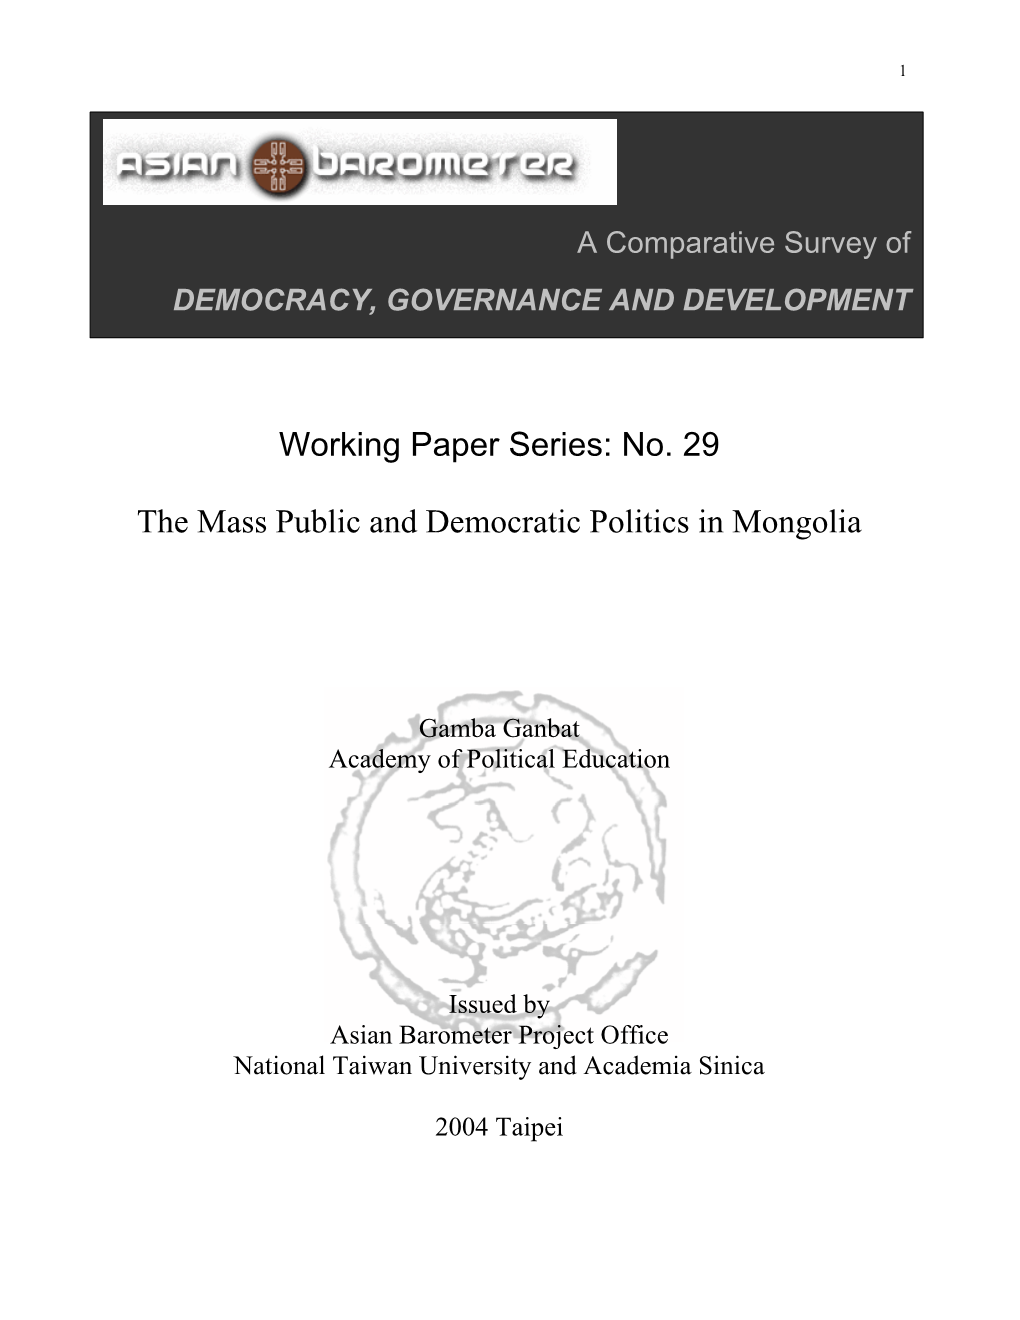 The Mass Public and Democratic Politics in Mongolia